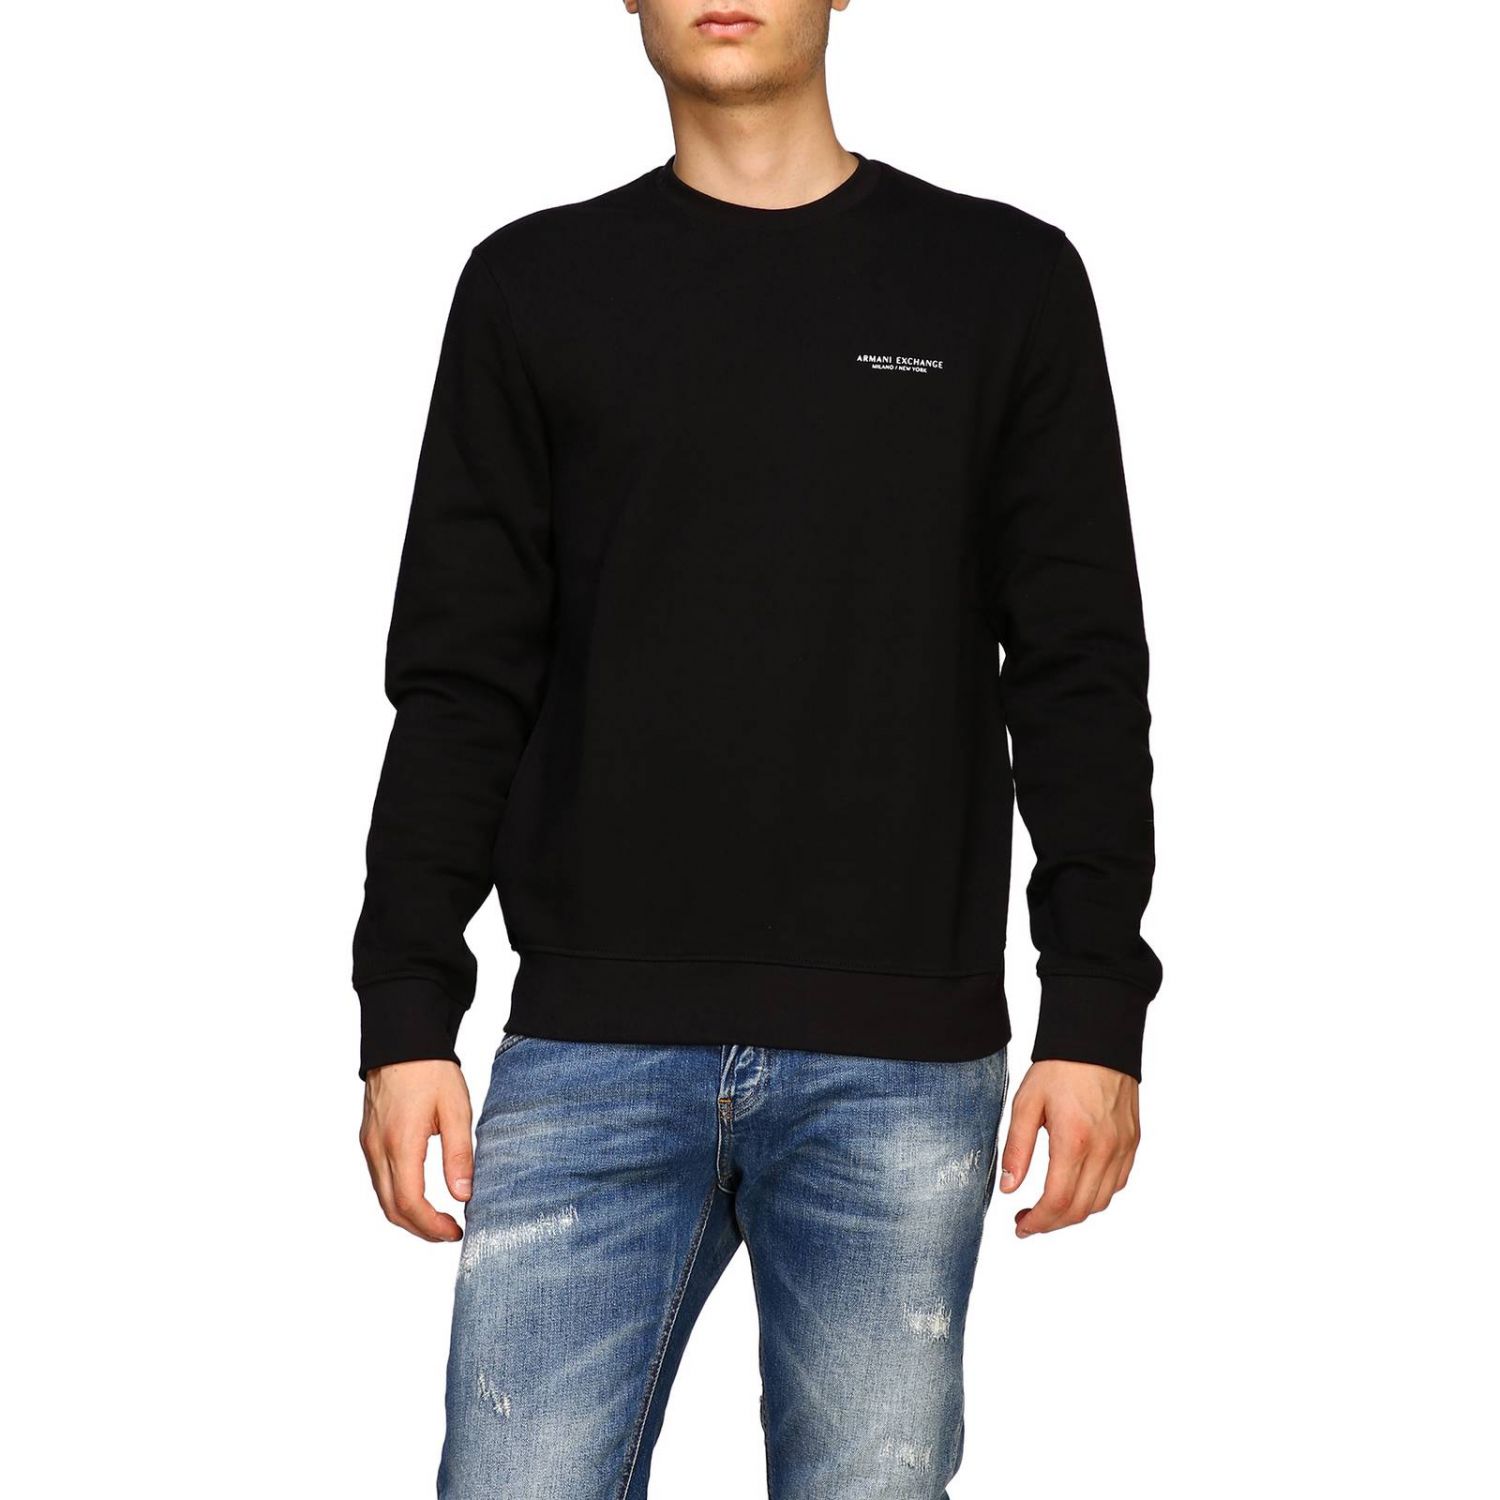 armani black sweater